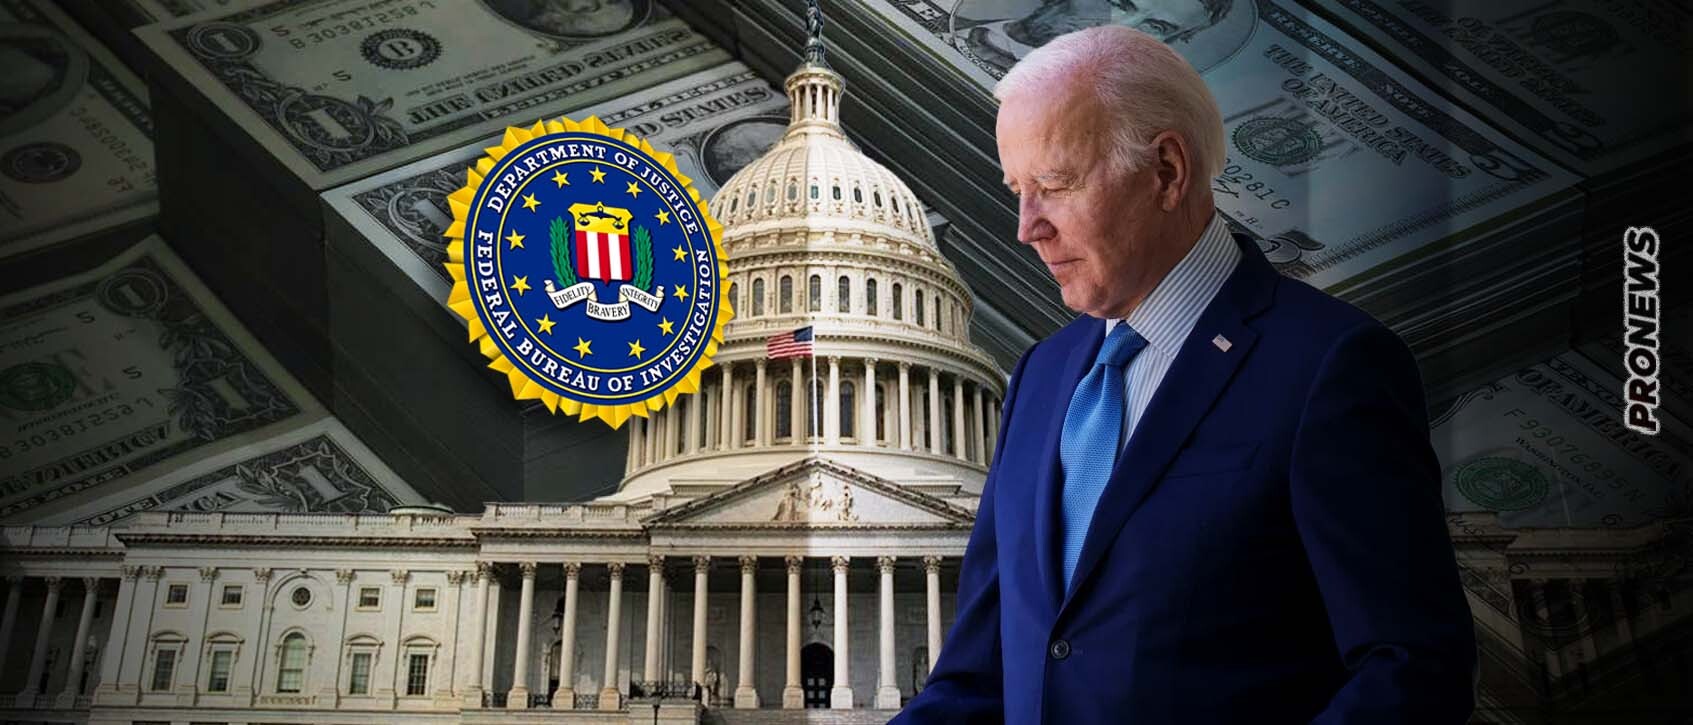 Ρεπουμπλικανοί: «Το FBI αρνήθηκε να παρουσιάσει στο Κογκρέσο έγγραφο που αναφέρει χρηματισμό της οικογένειας Μπάιντεν από ξένες δυνάμεις»!